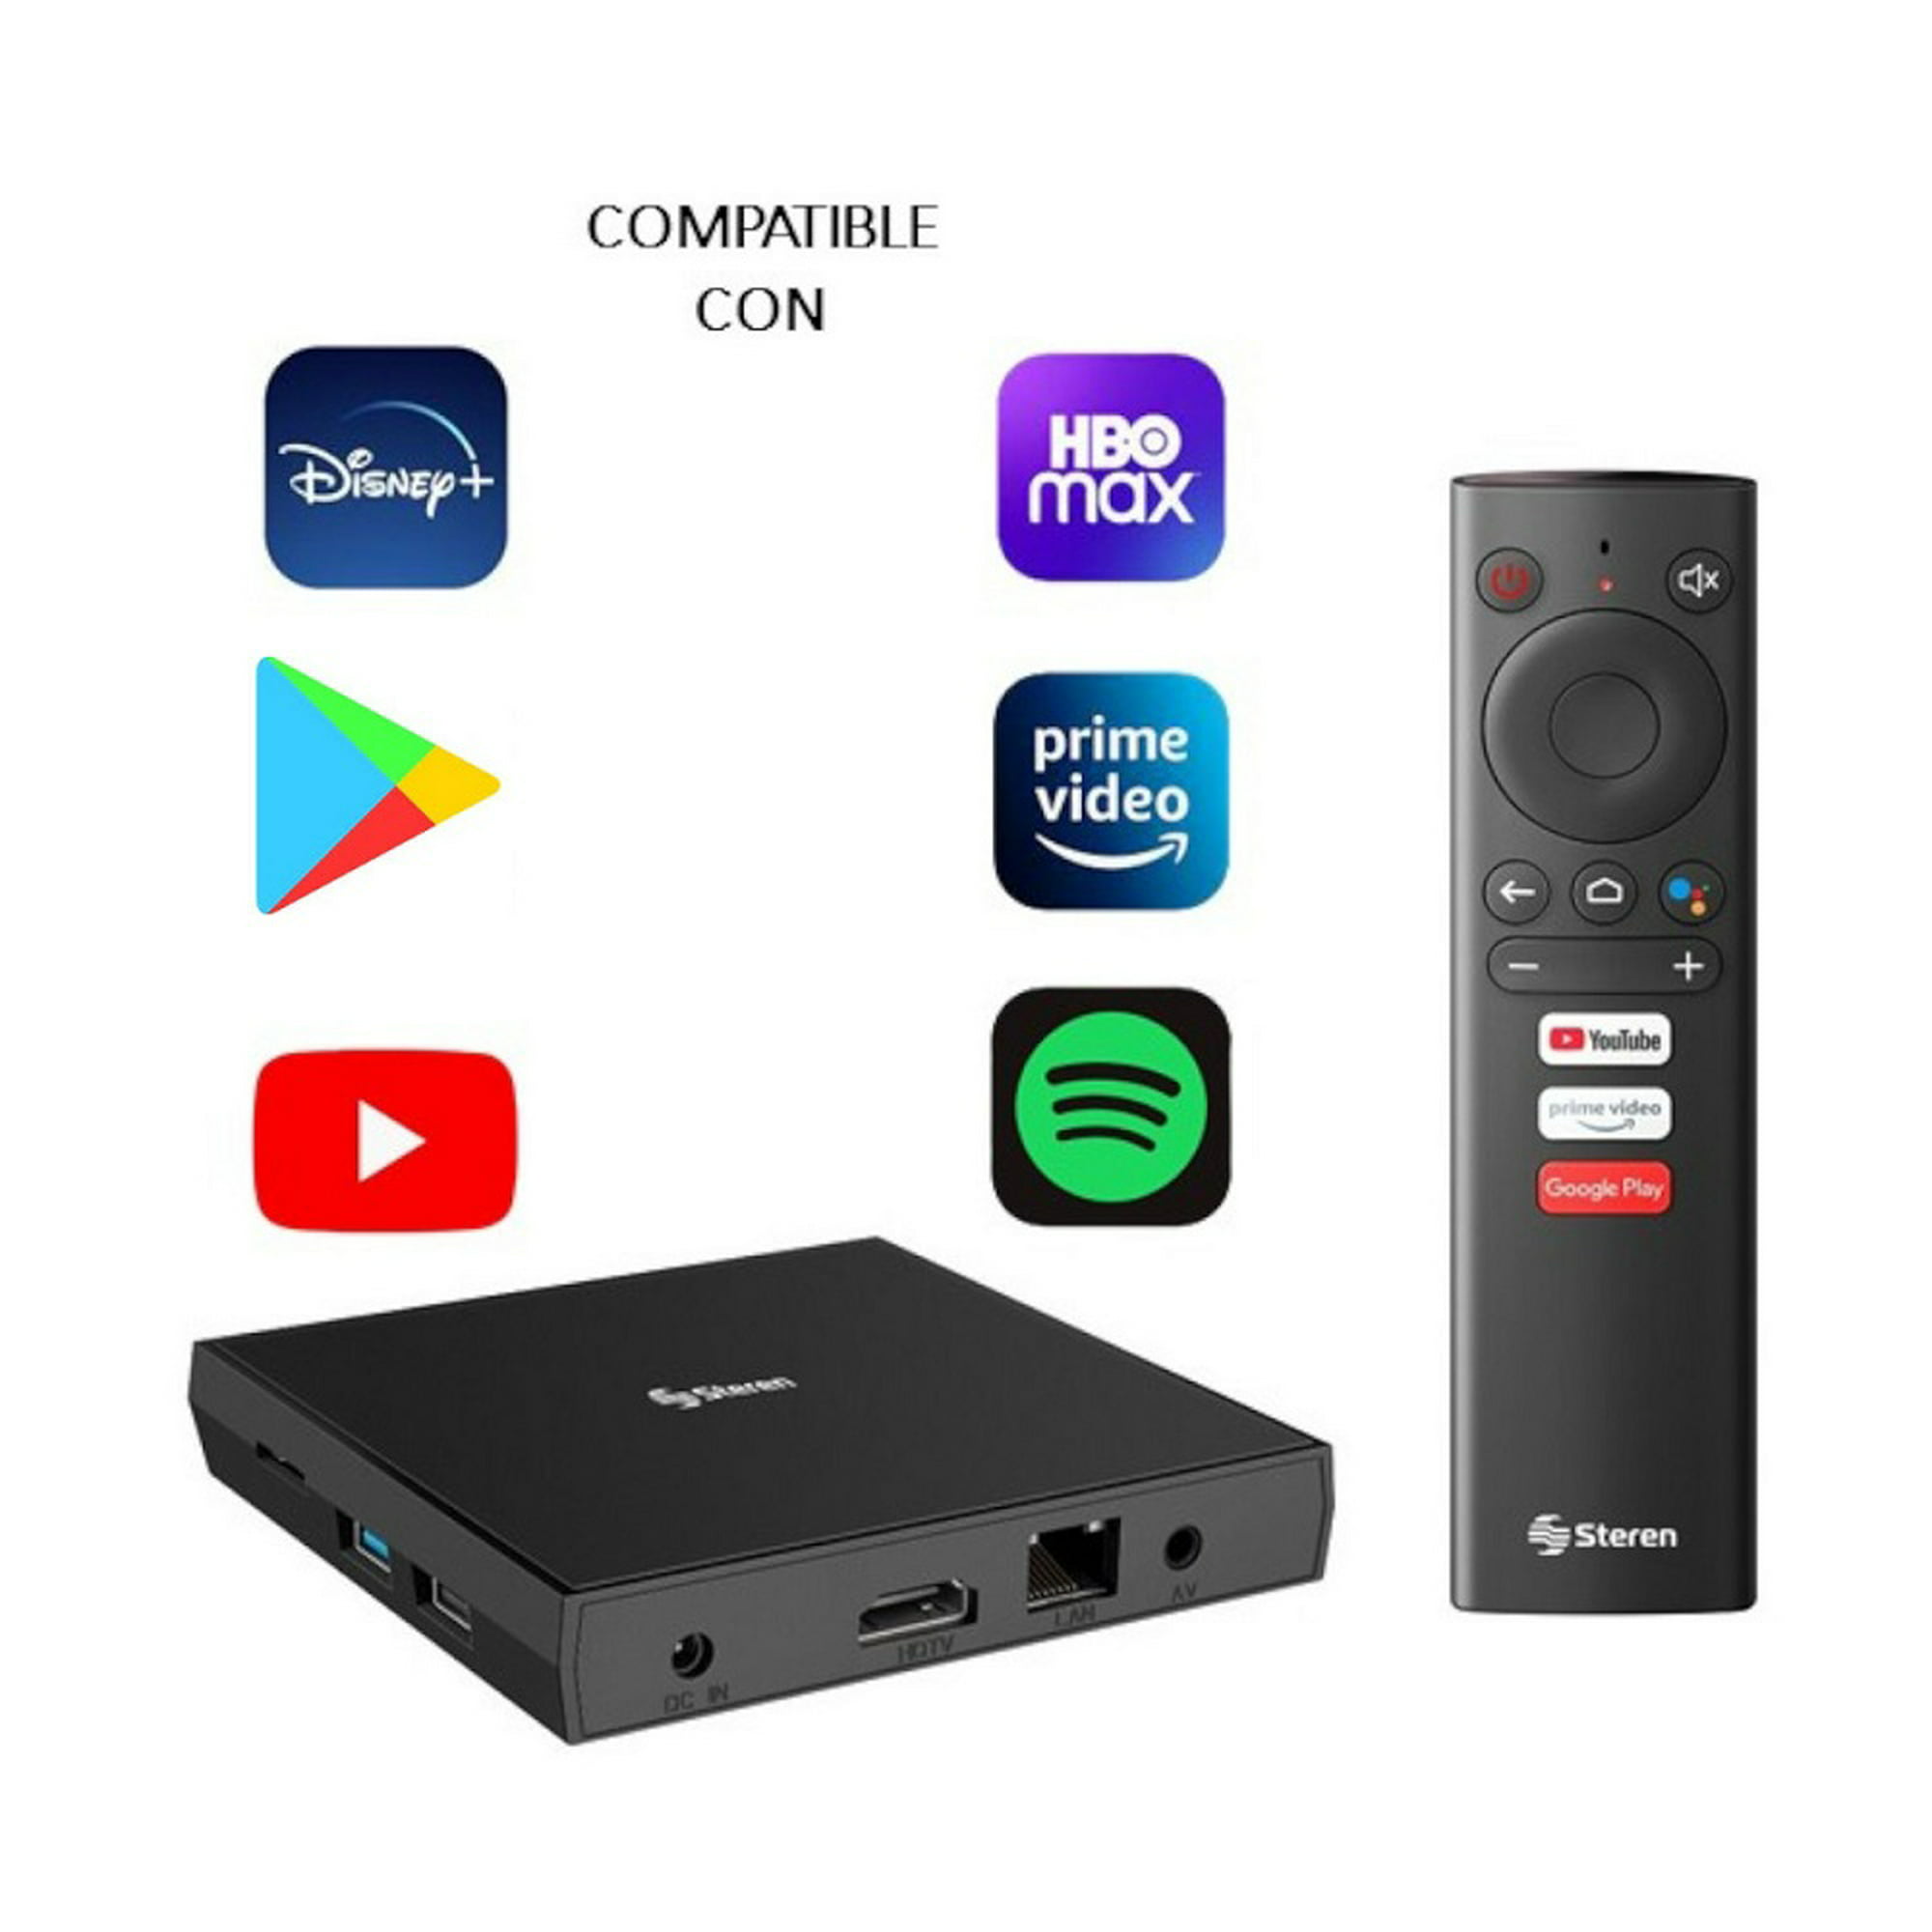 TV Box YOUIN Convertidor a Smart TV Android 10 - Pack de tre